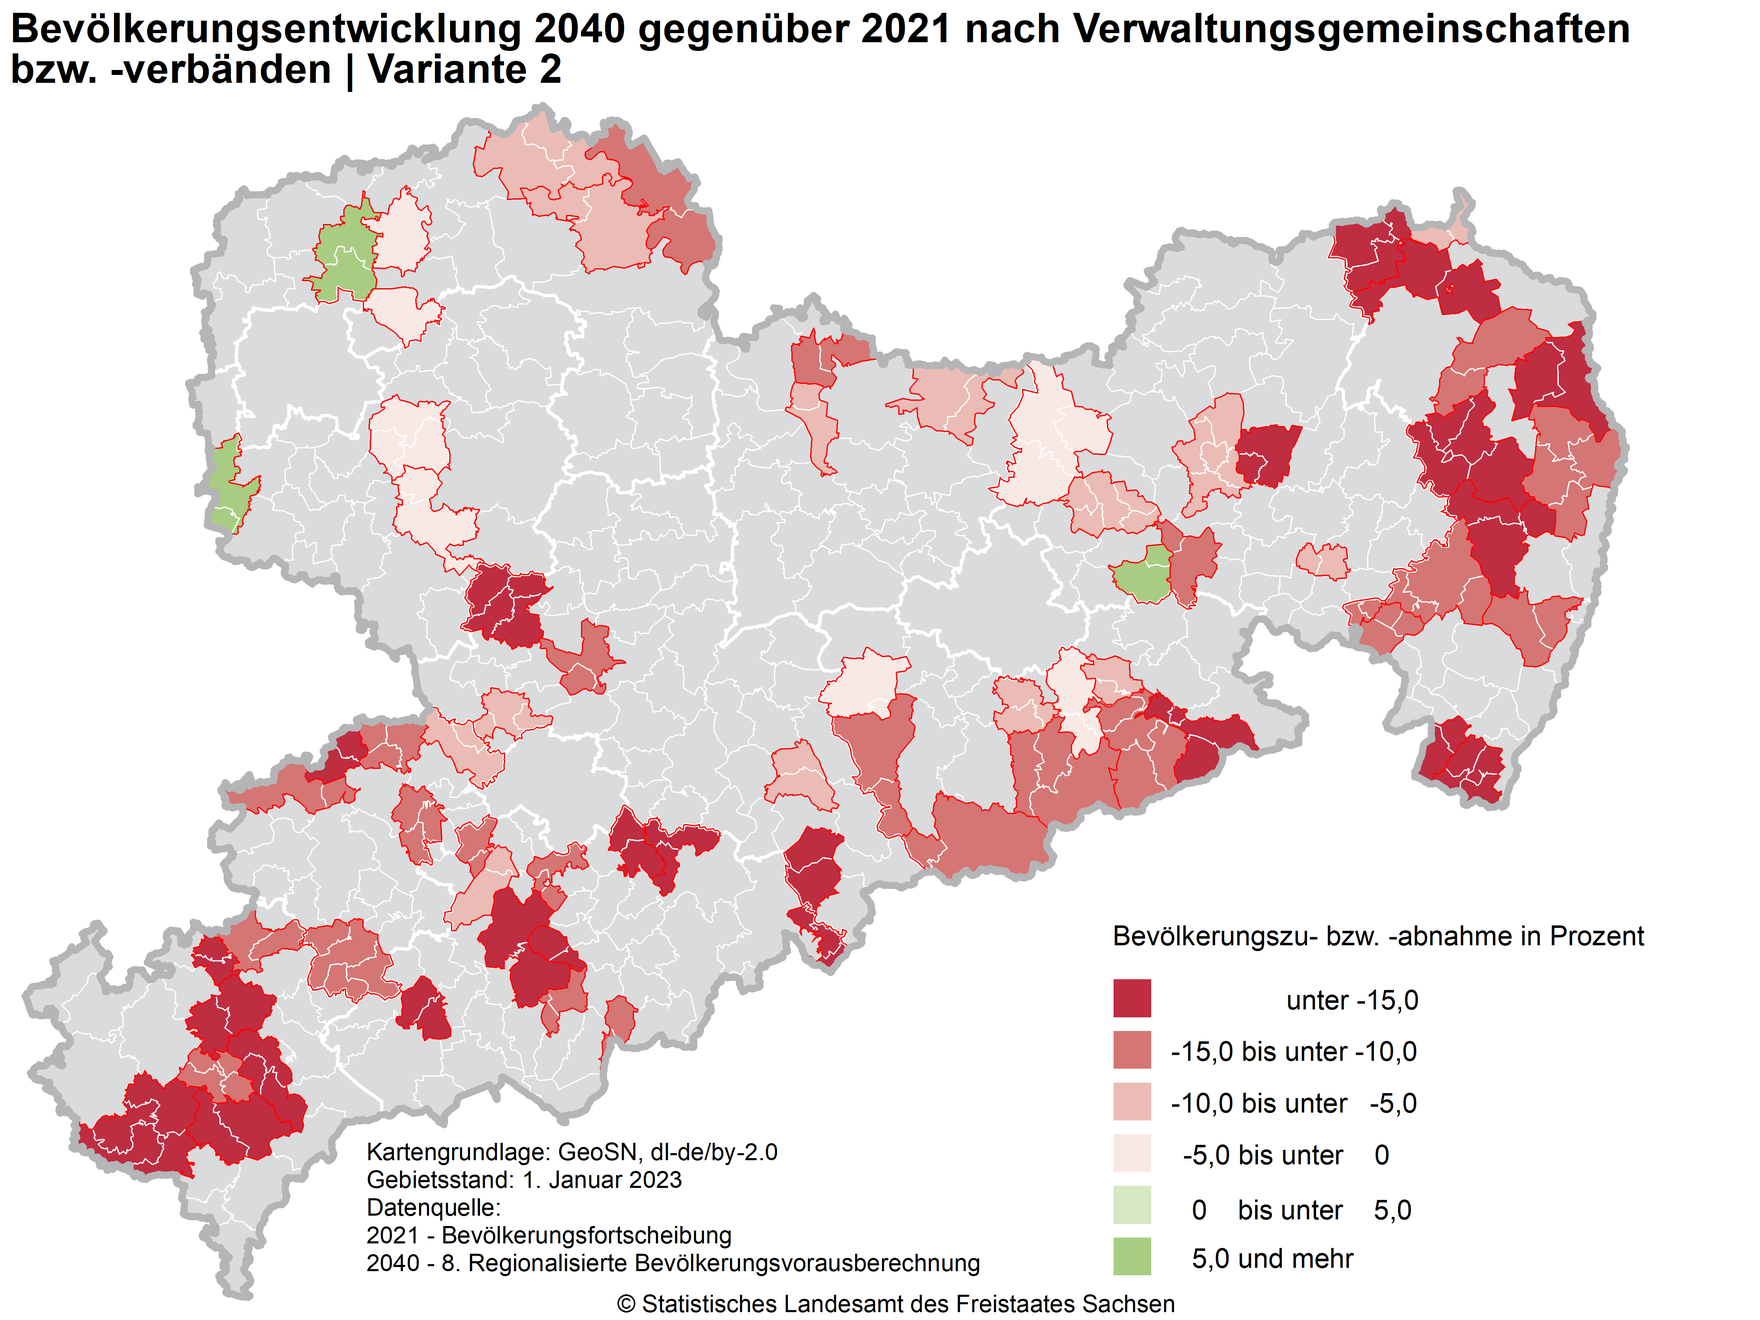 Die Karte zeigt die relative Bevölkerungsentwicklung der Verwaltungsgemeinschaften und –verbände in Sachsen 2040 gegenüber 2021 laut Variante 2 der 8. RBV.